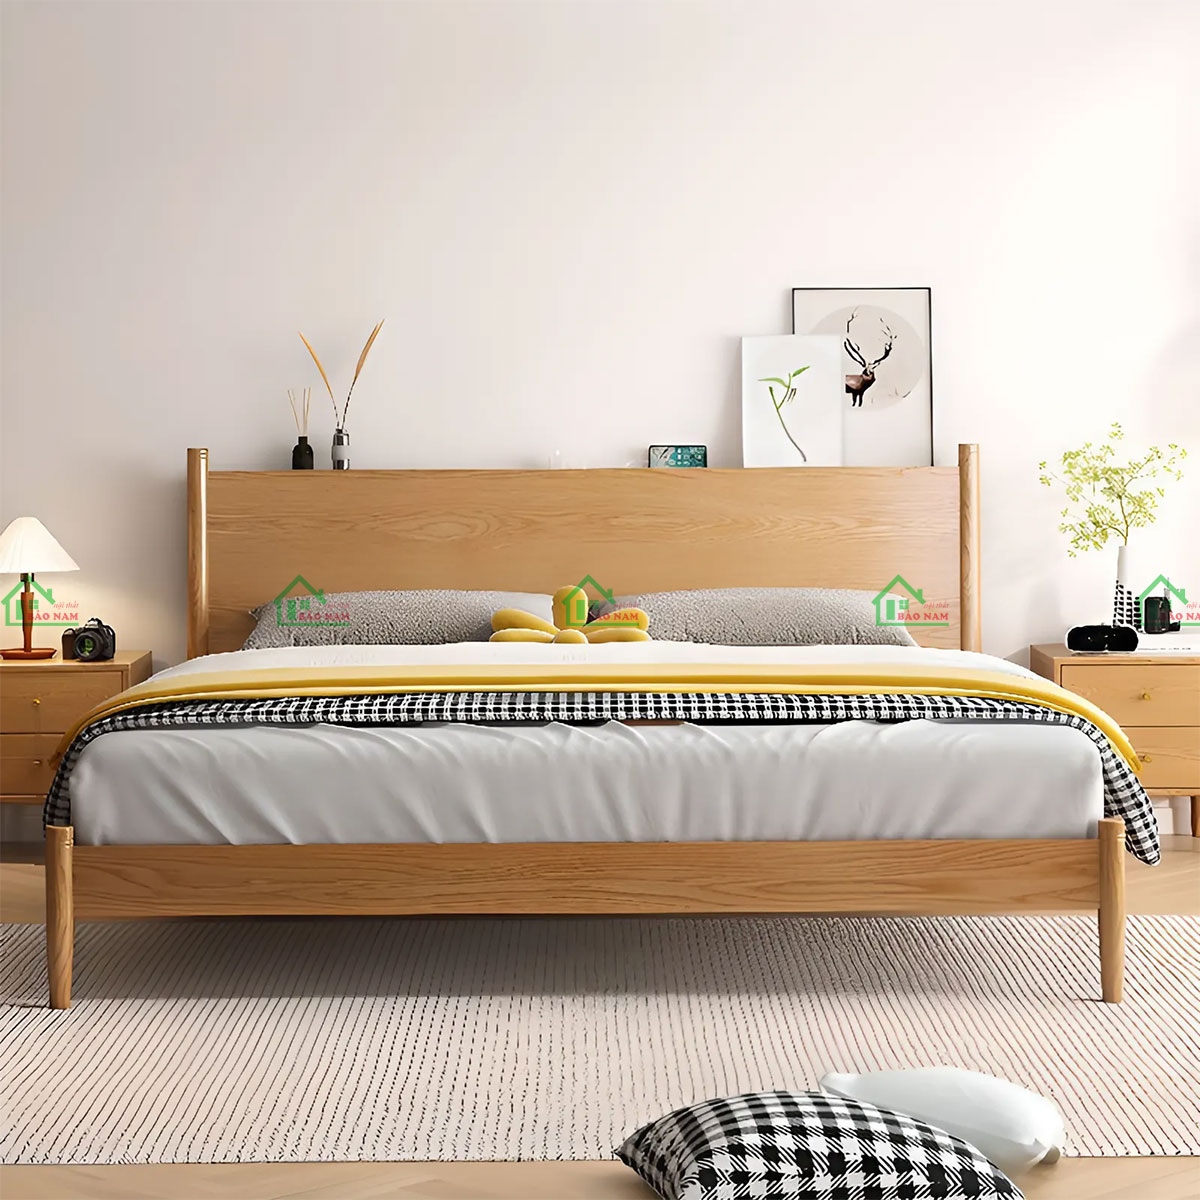 Tại sao nên chọn giường ngủ gỗ tự nhiên